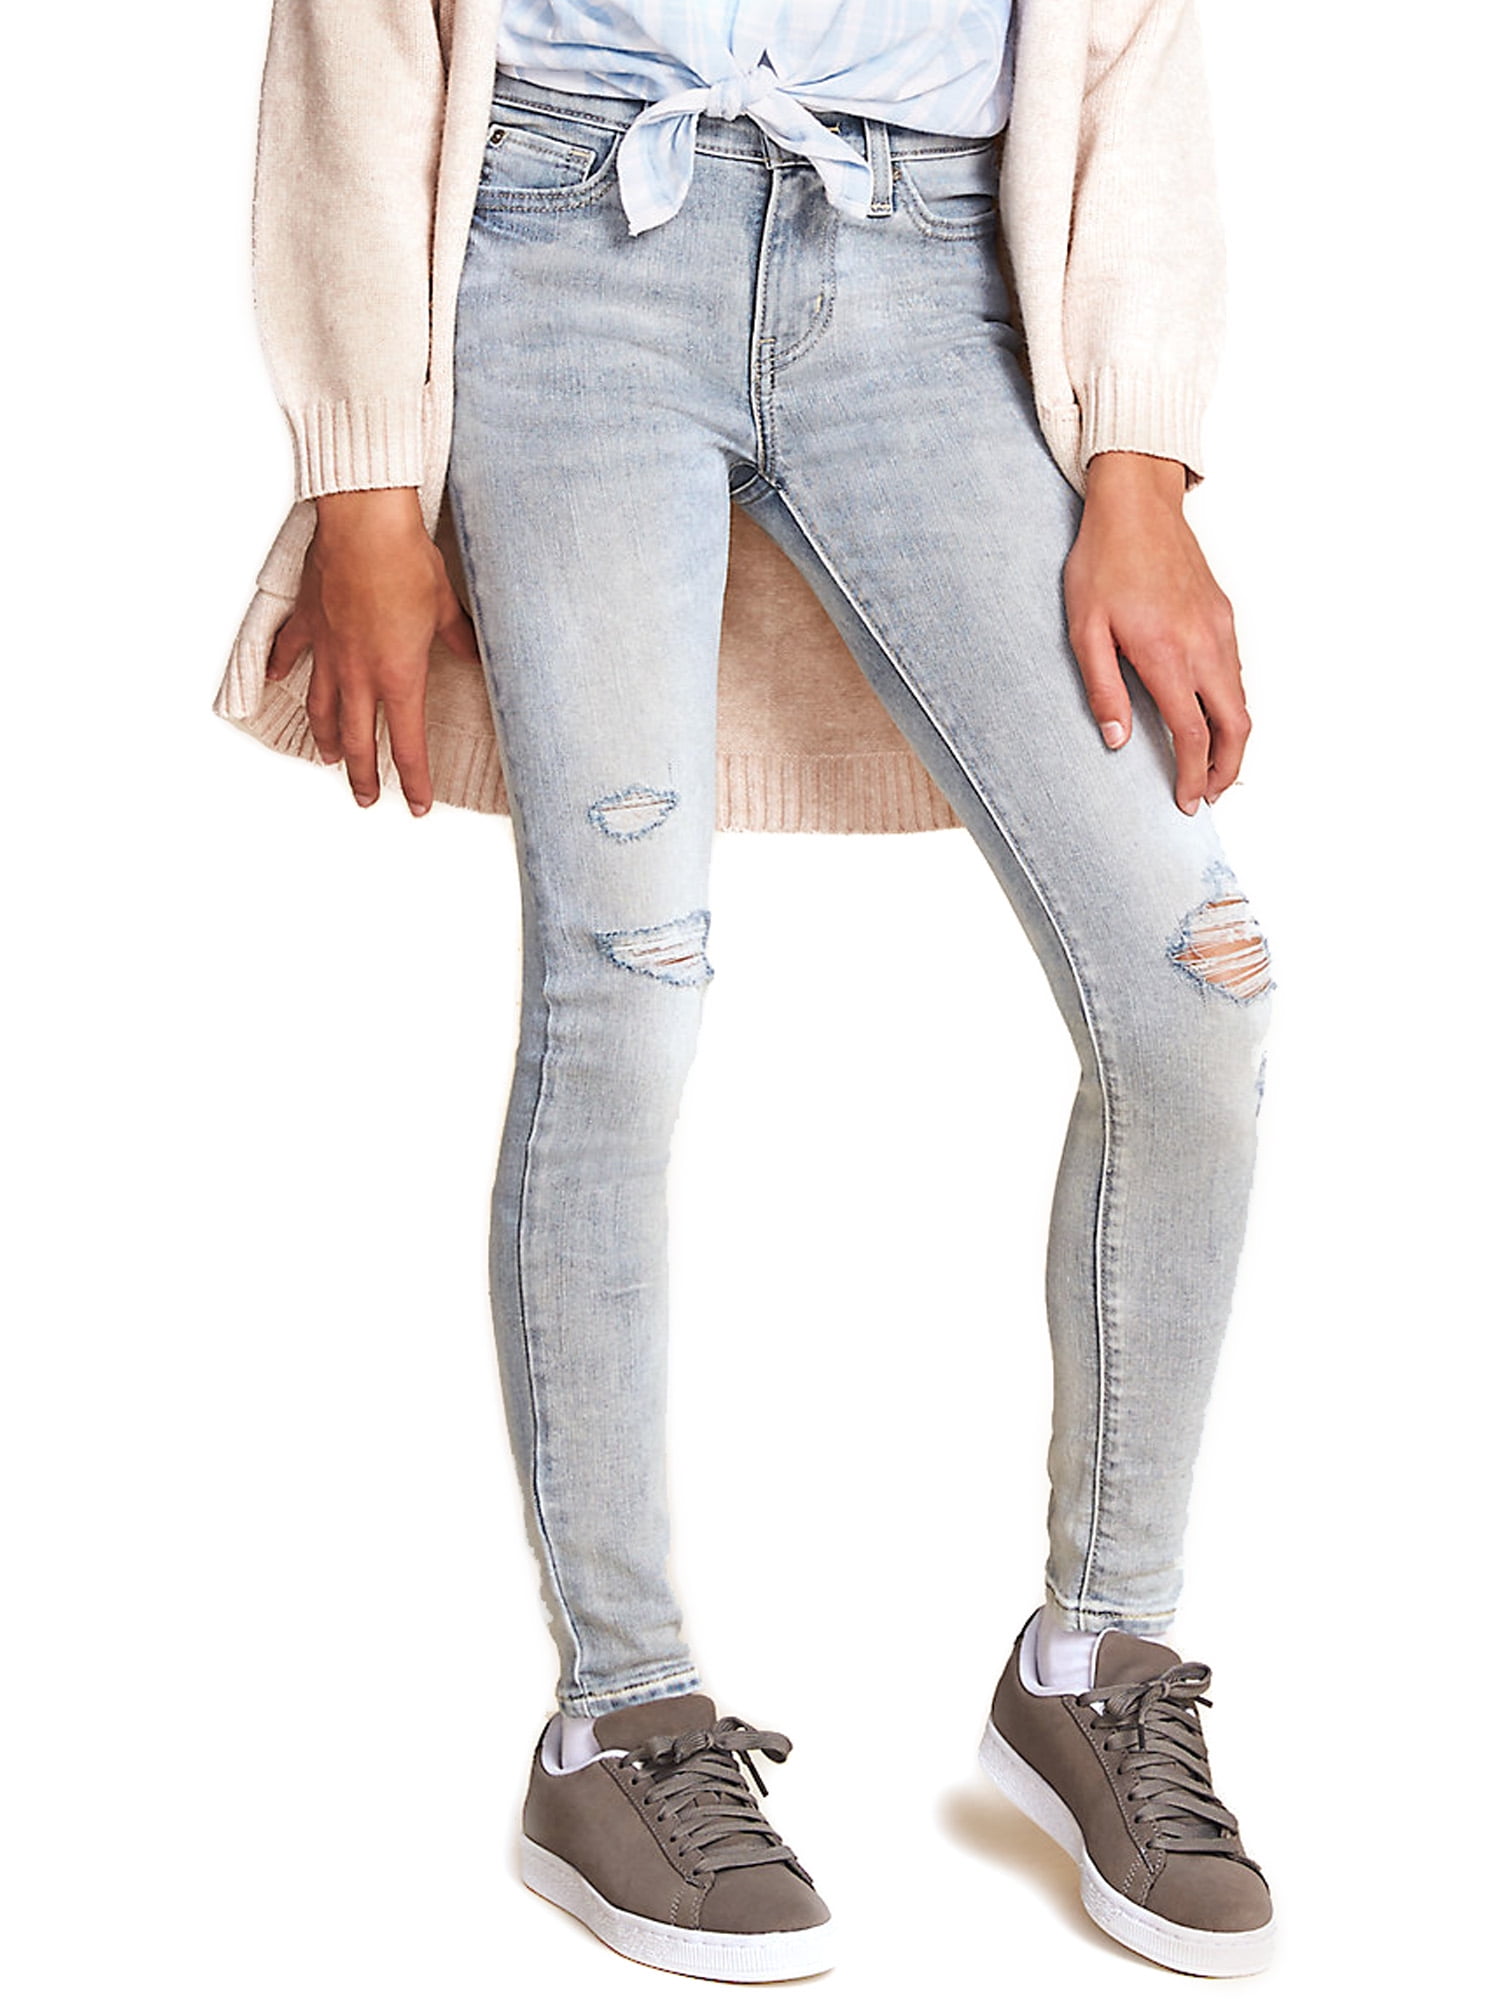 by Strauss & Co. Girls Skinny Jeans, Sizes 5-18 - Walmart.com